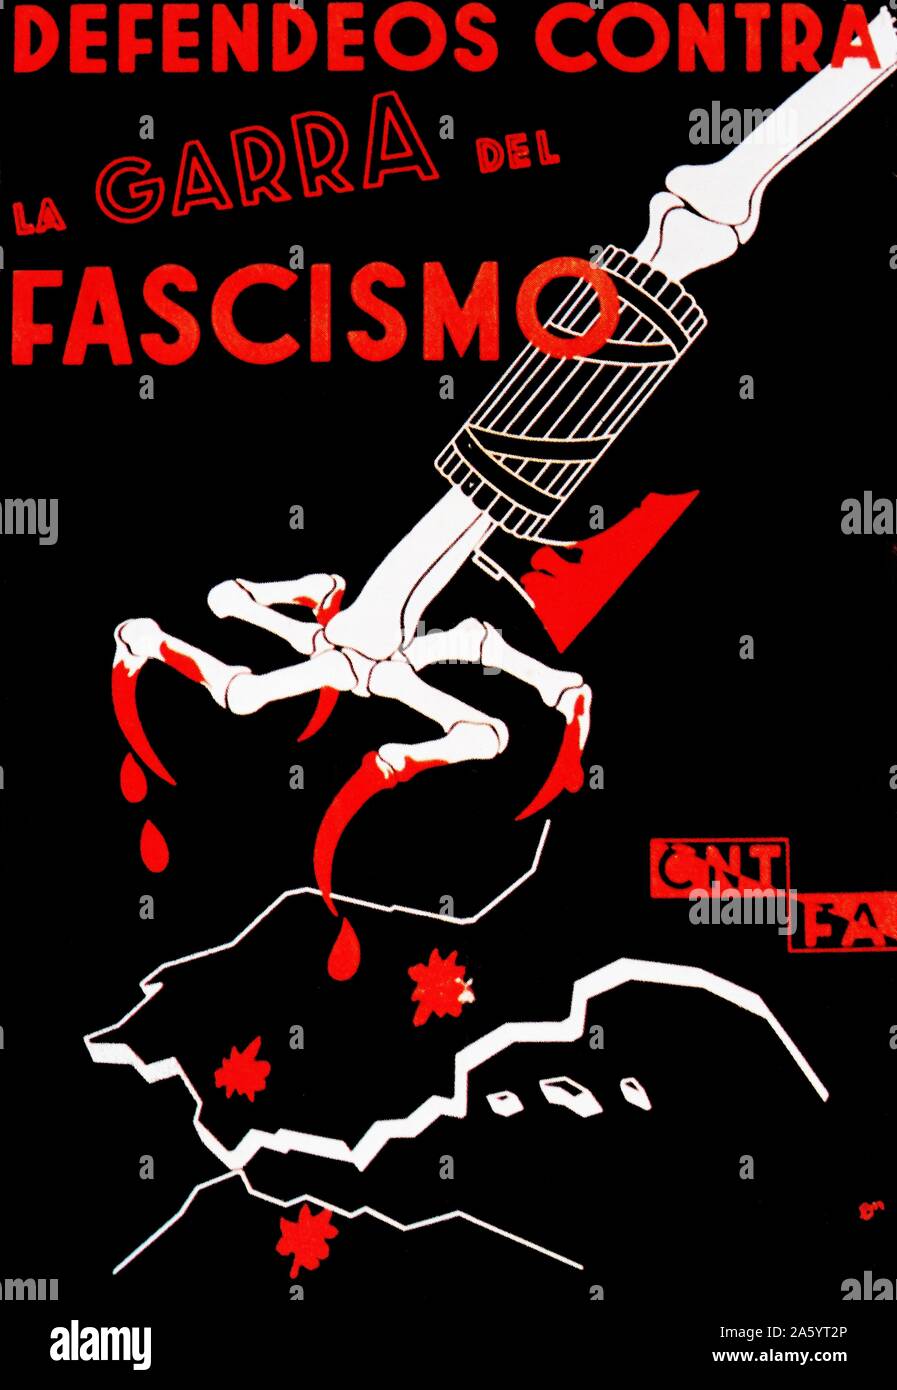 Guerra Civile Spagnola; CNT & Fai chiamate poster per la difesa della Spagna dall'artiglio del fascismo. Foto Stock